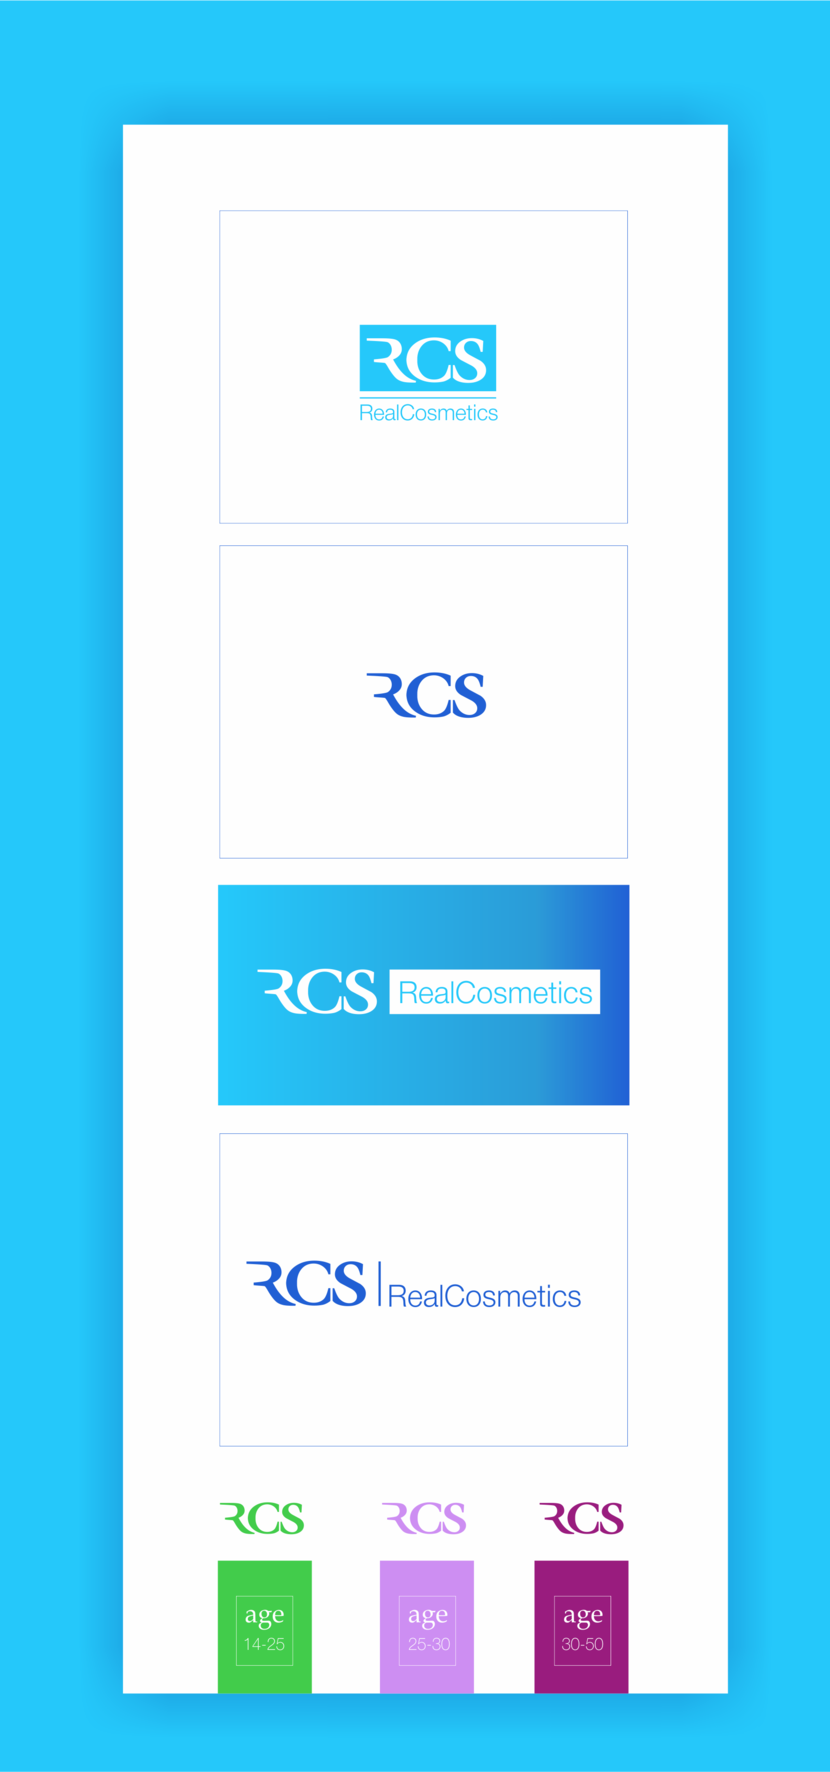 RCS Логотип для лечебно-профилактической серии косметики